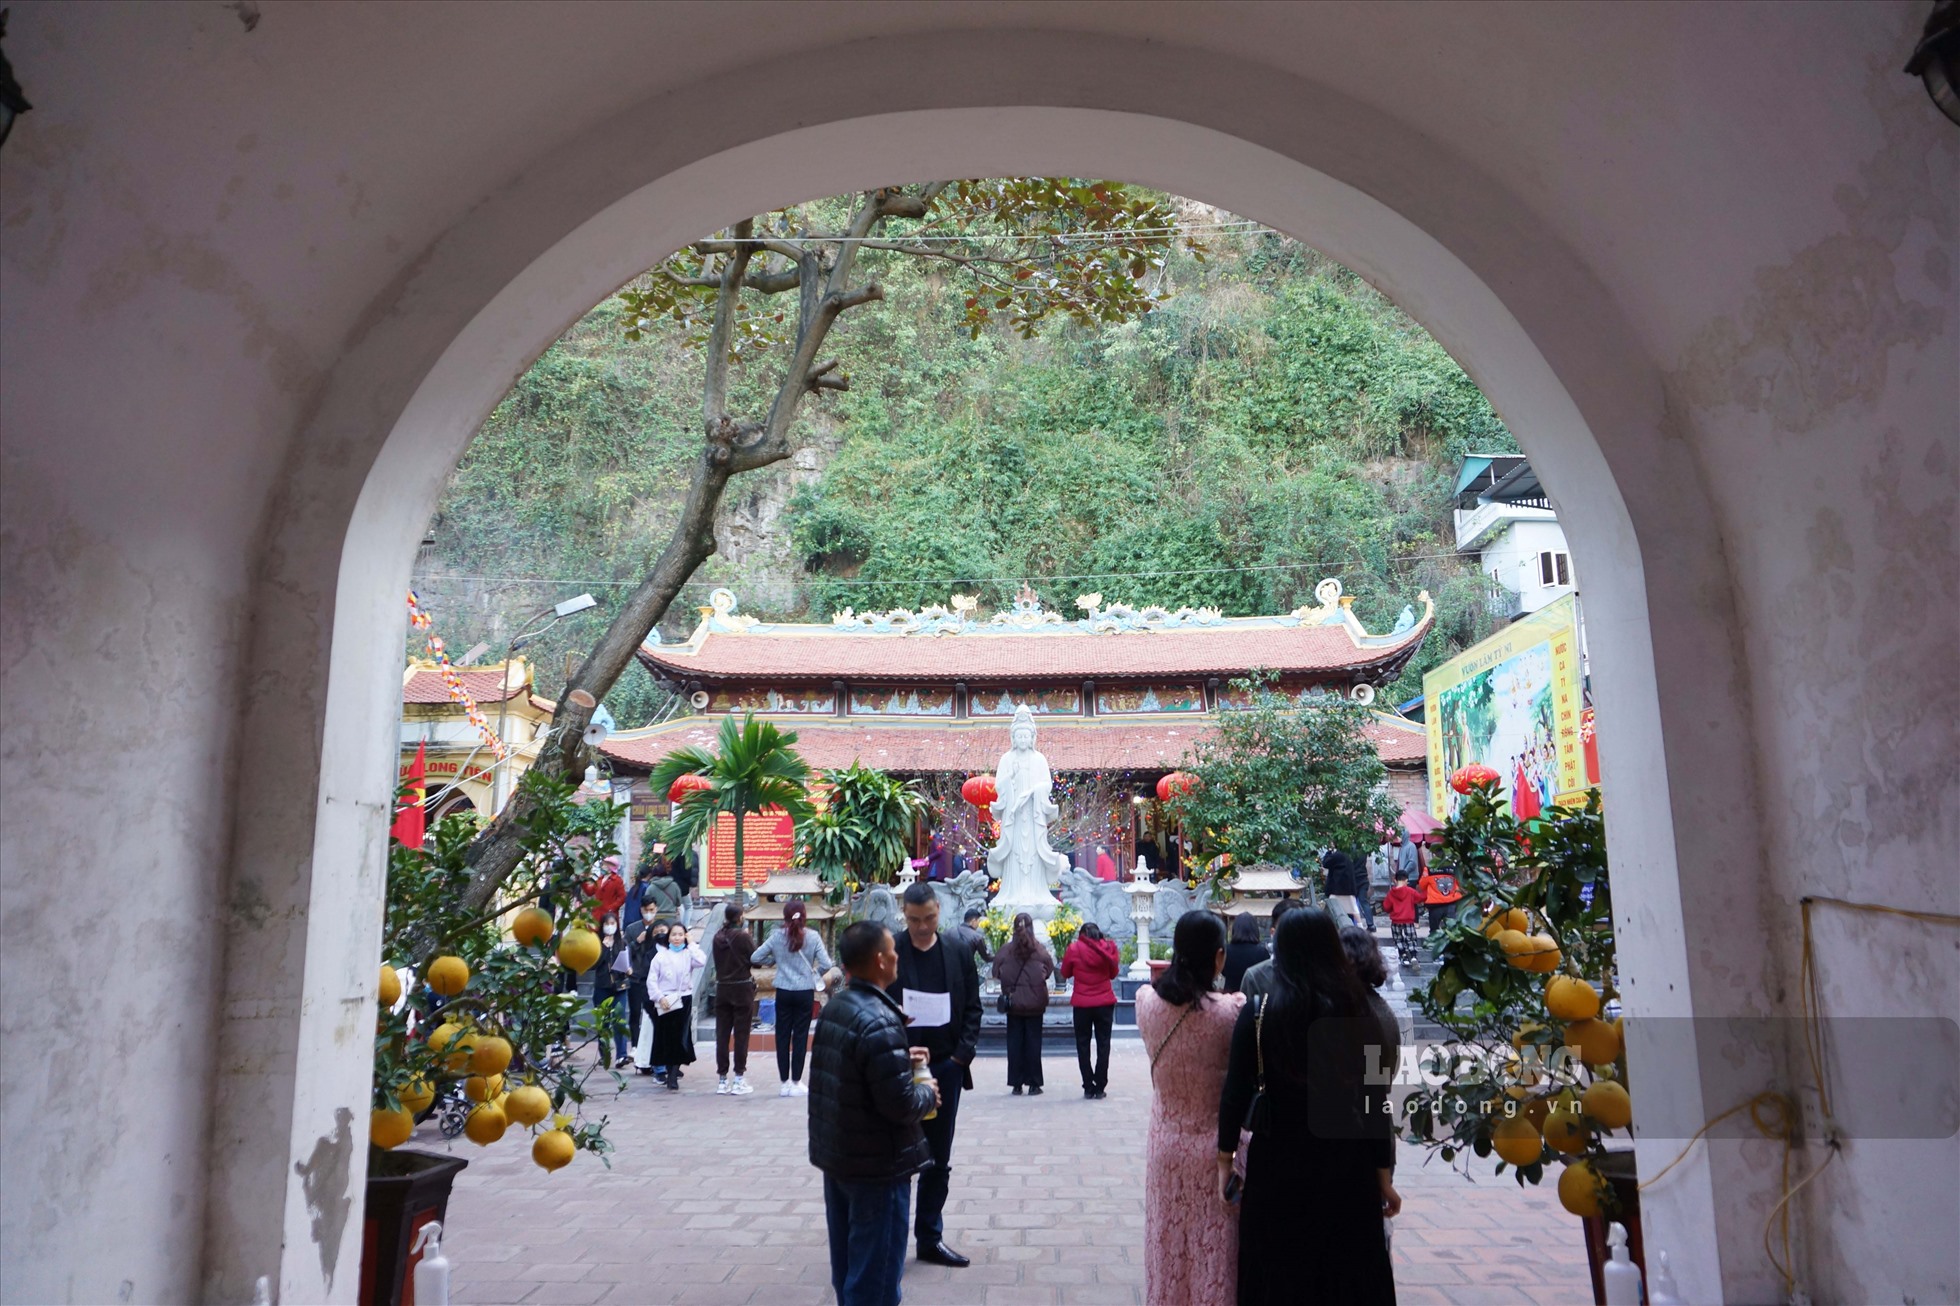 Bước vào chùa Long Tiên, du khách sẽ thấy cổng Tam Quan với 3 cửa đại diện cho Hữu - Vô - Đại. Trong đó cánh cổng lớn nhất sẽ dành cho những người theo đạo Phật vào cúng bái, còn hai bên cổng nhỏ hơn sẽ dành cho du khách vãng lai vào tham quan. Ảnh: Đoàn Hưng